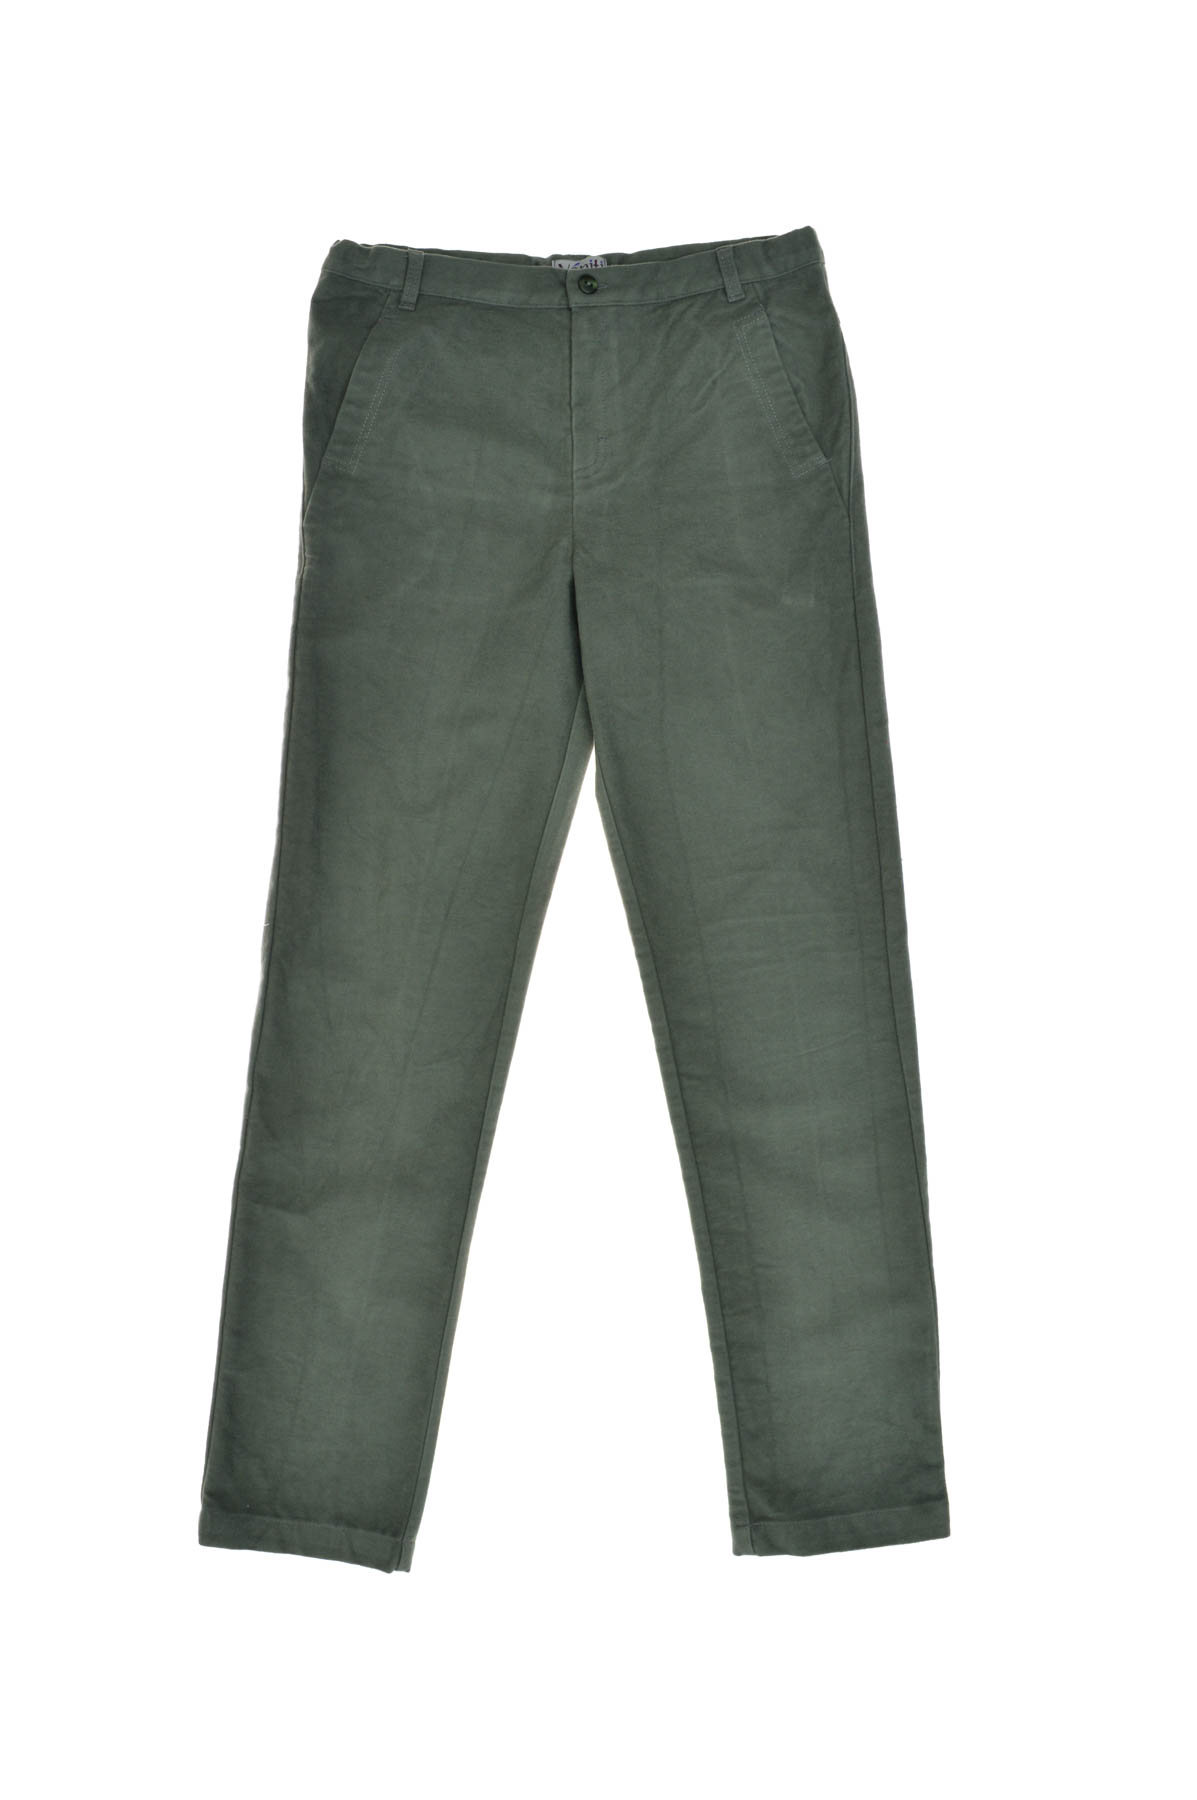 Βρεφικό παντελόνι για αγόρι - Veniti - 0